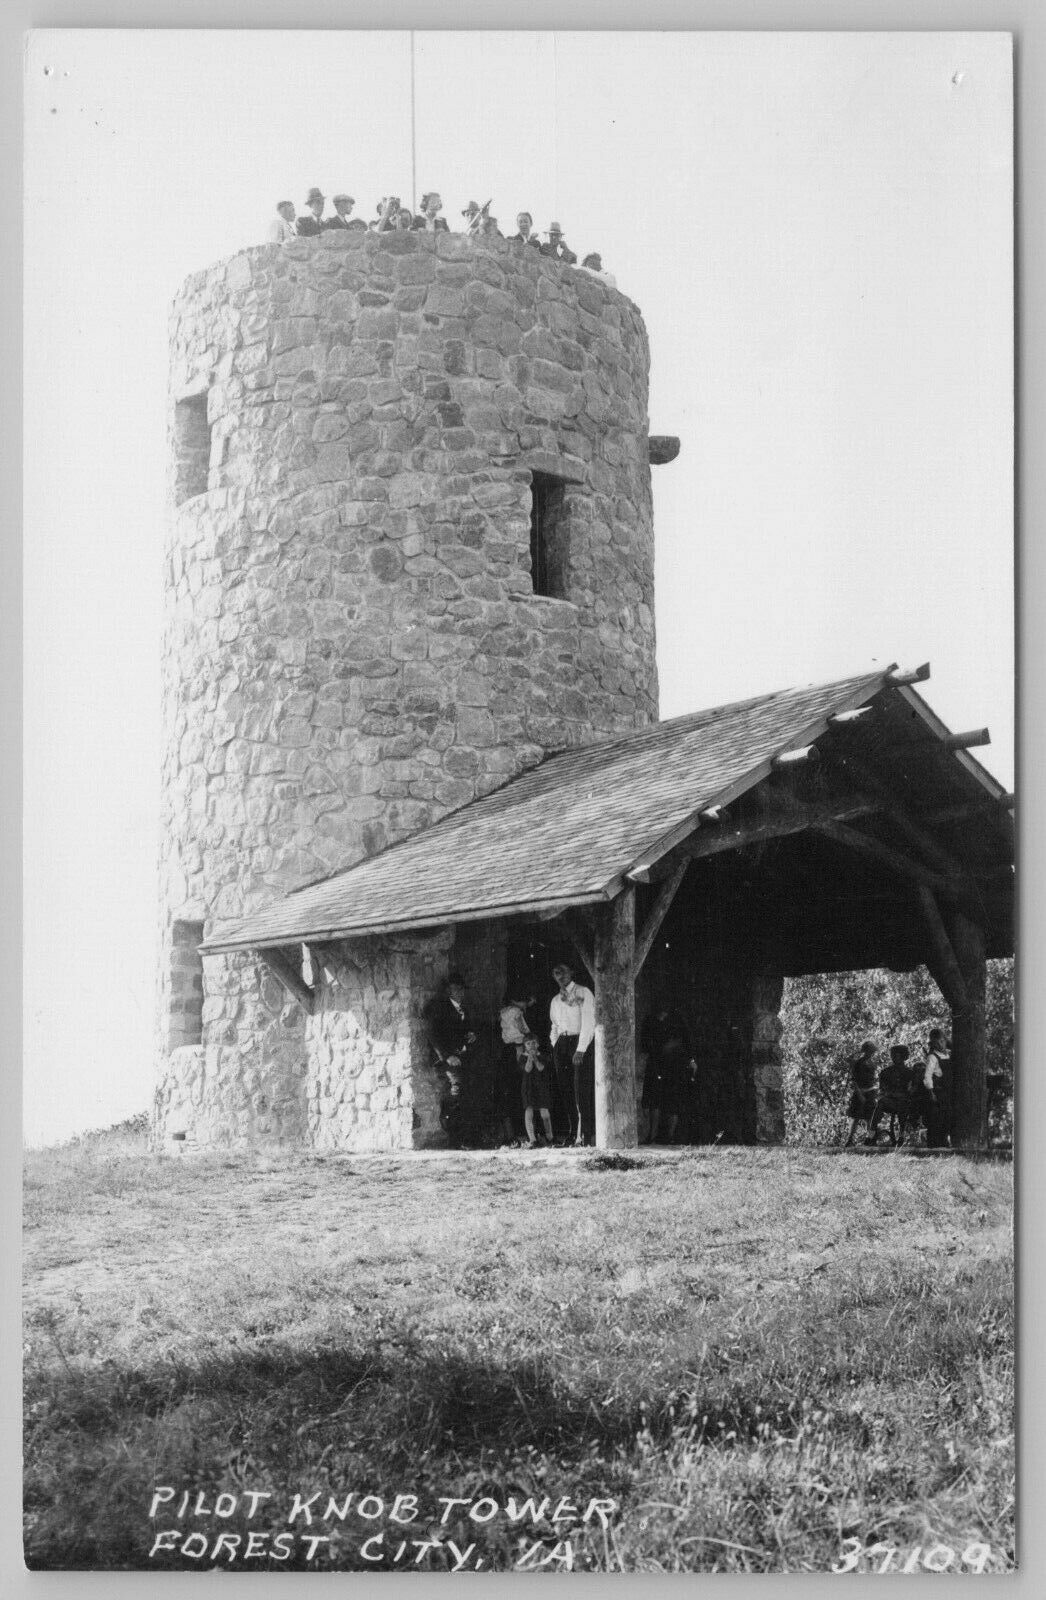 Pilot Knob Tower, Forest City, Winnebago County, Iowa